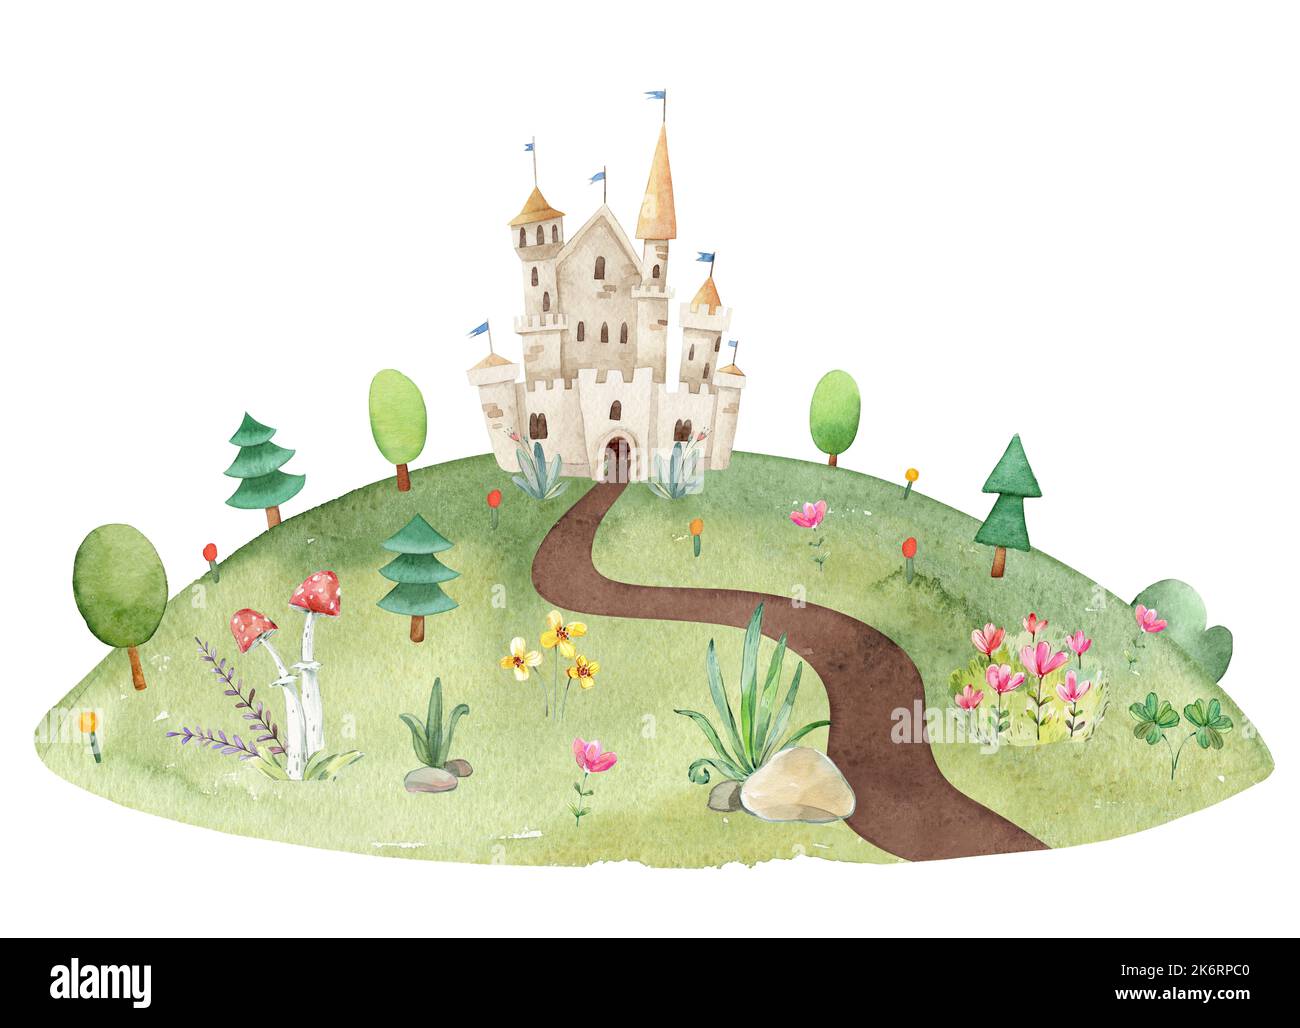 Aquarelle puérile illustration du paysage d'été prairie avec sentier de terre, château de fées, arbres, herbe verte, fleurs Banque D'Images